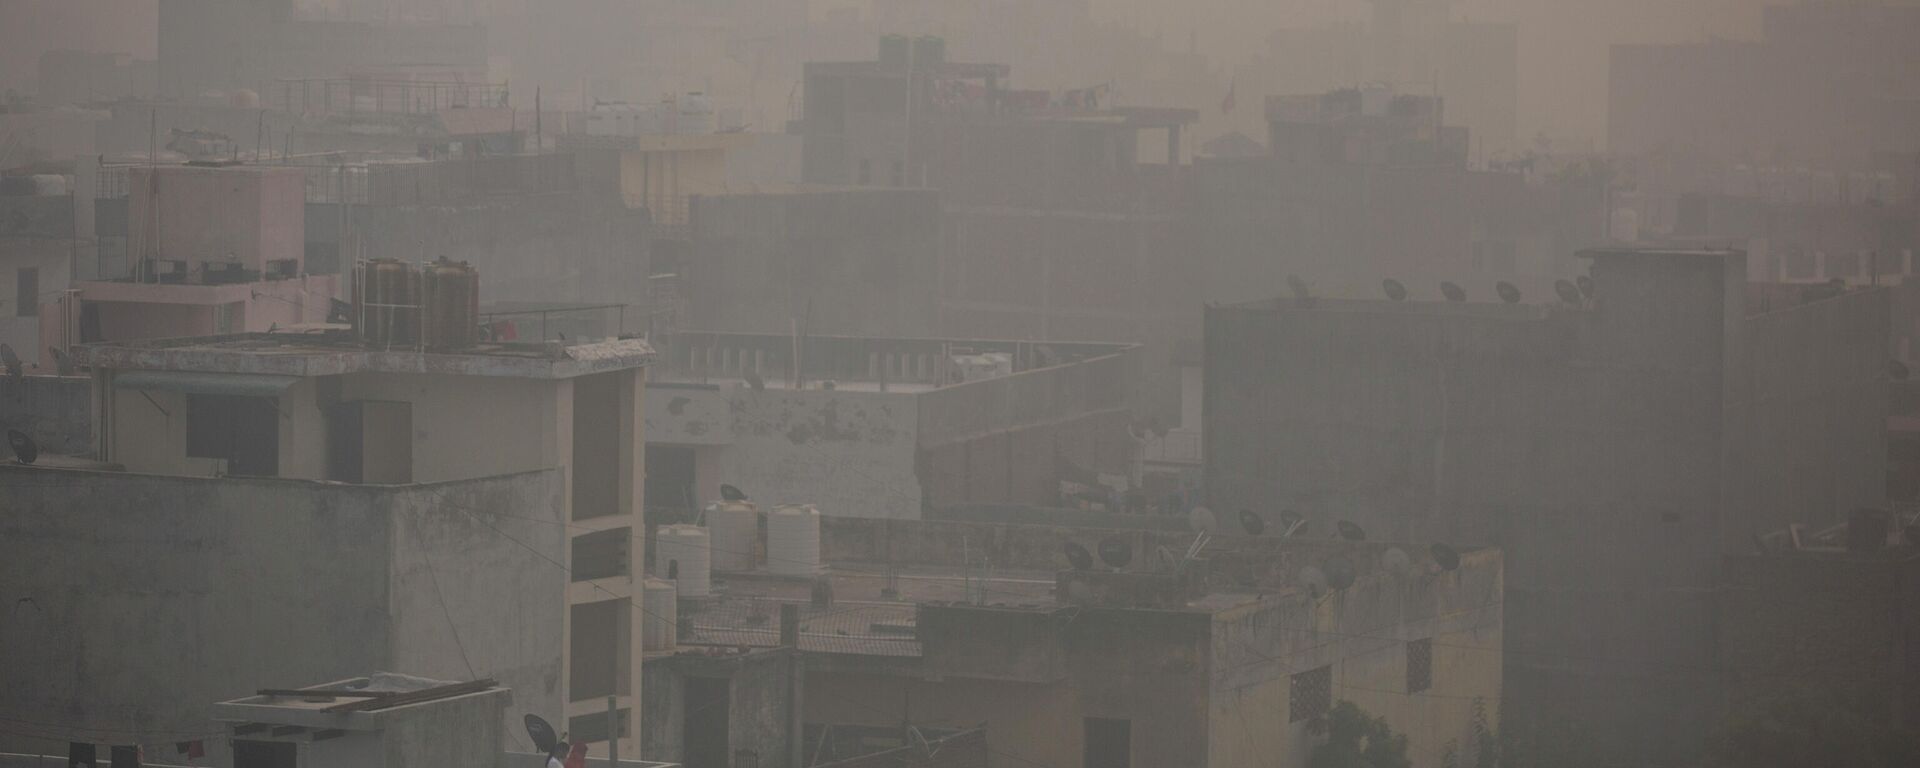 Zagađenje u Nju Delhiju u Indiji posle praznika vatrometa - Sputnik Srbija, 1920, 05.11.2021